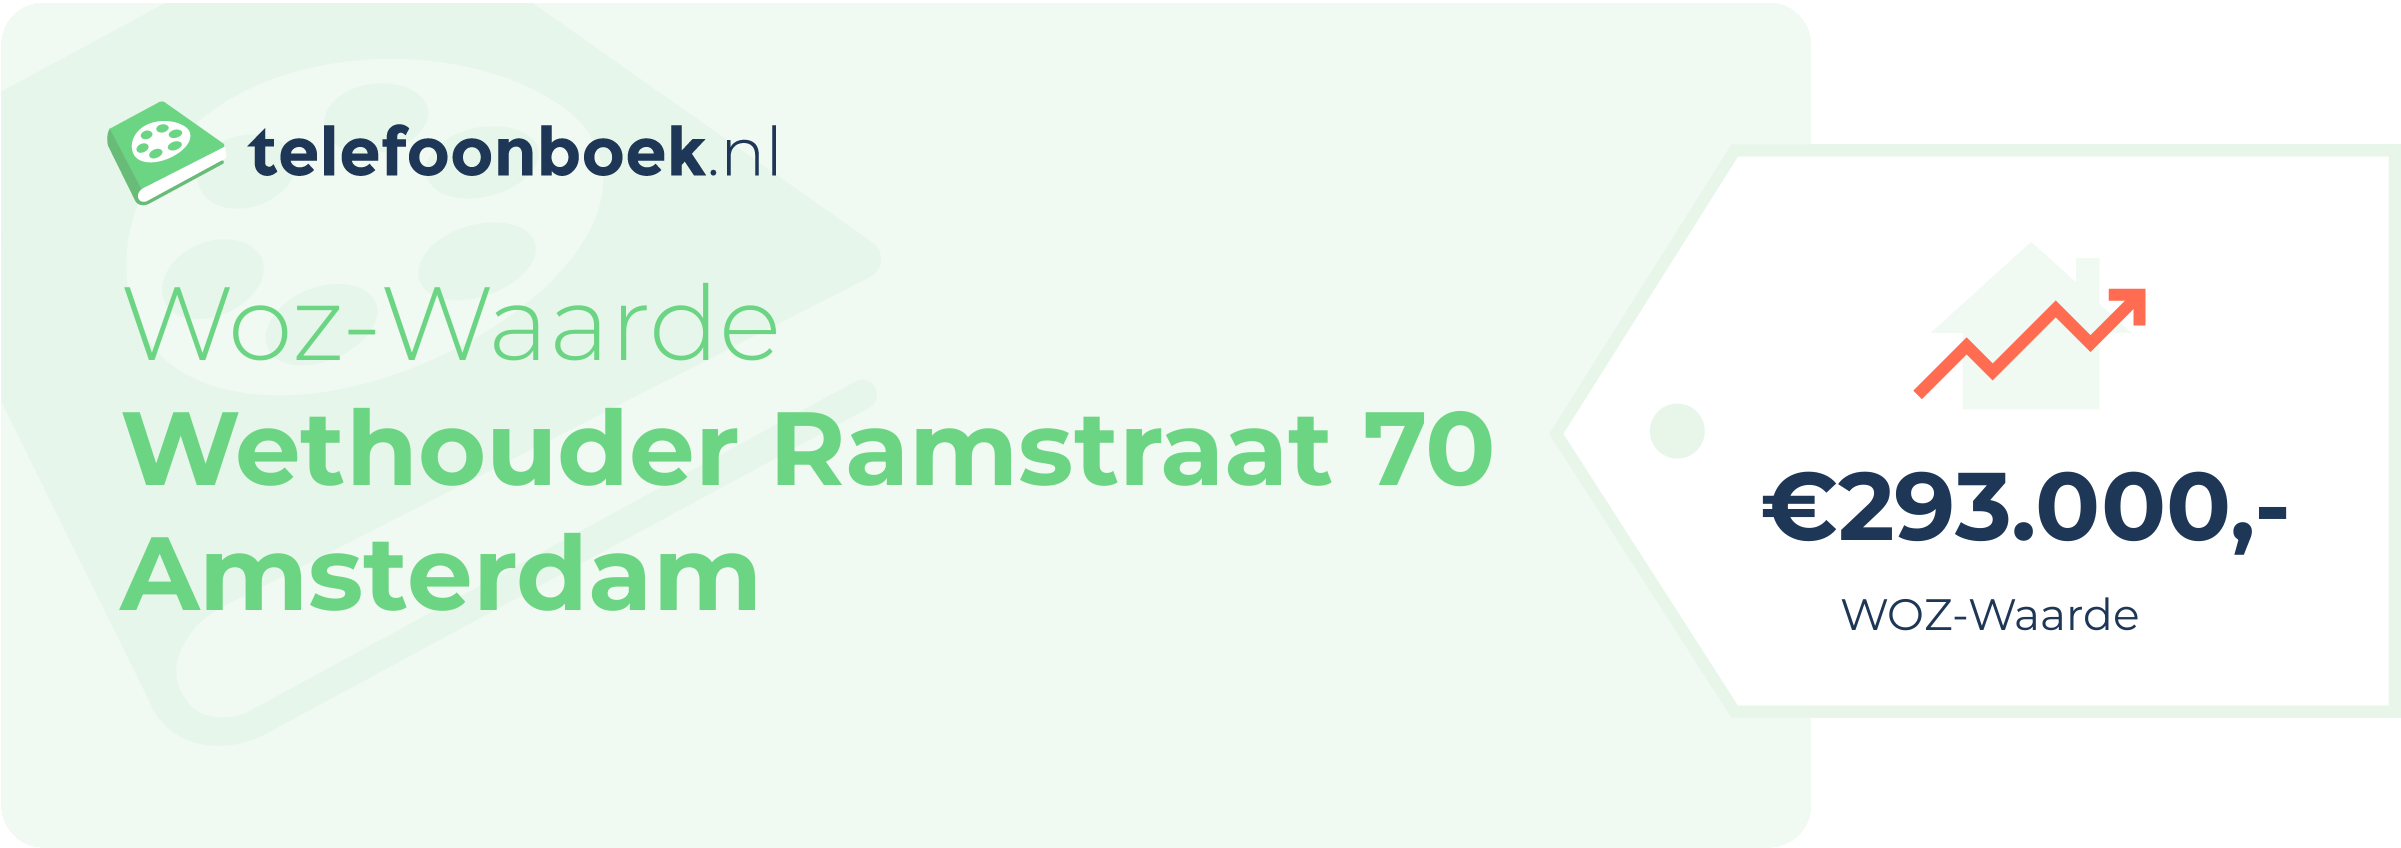 WOZ-waarde Wethouder Ramstraat 70 Amsterdam